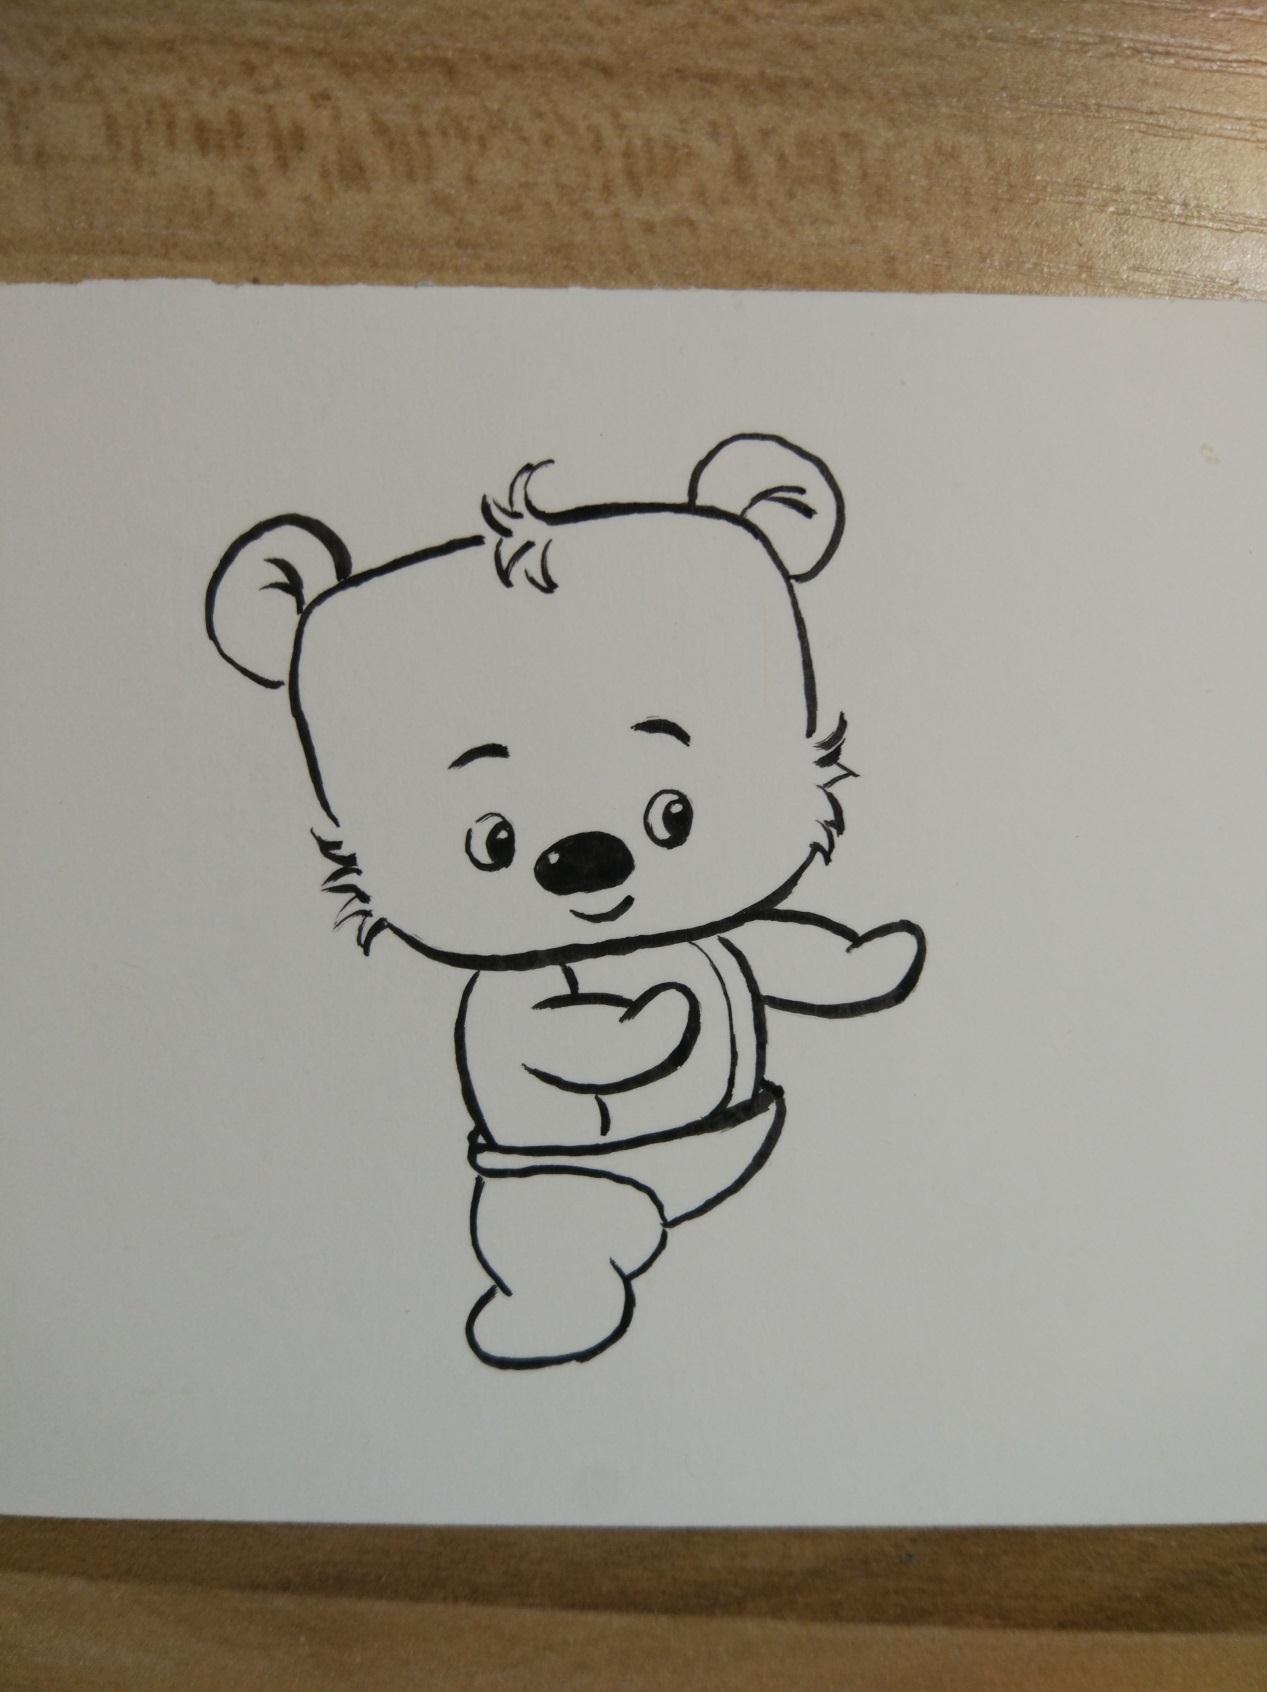 宋宋原创优秀漫画作品之可爱的功夫小熊画法